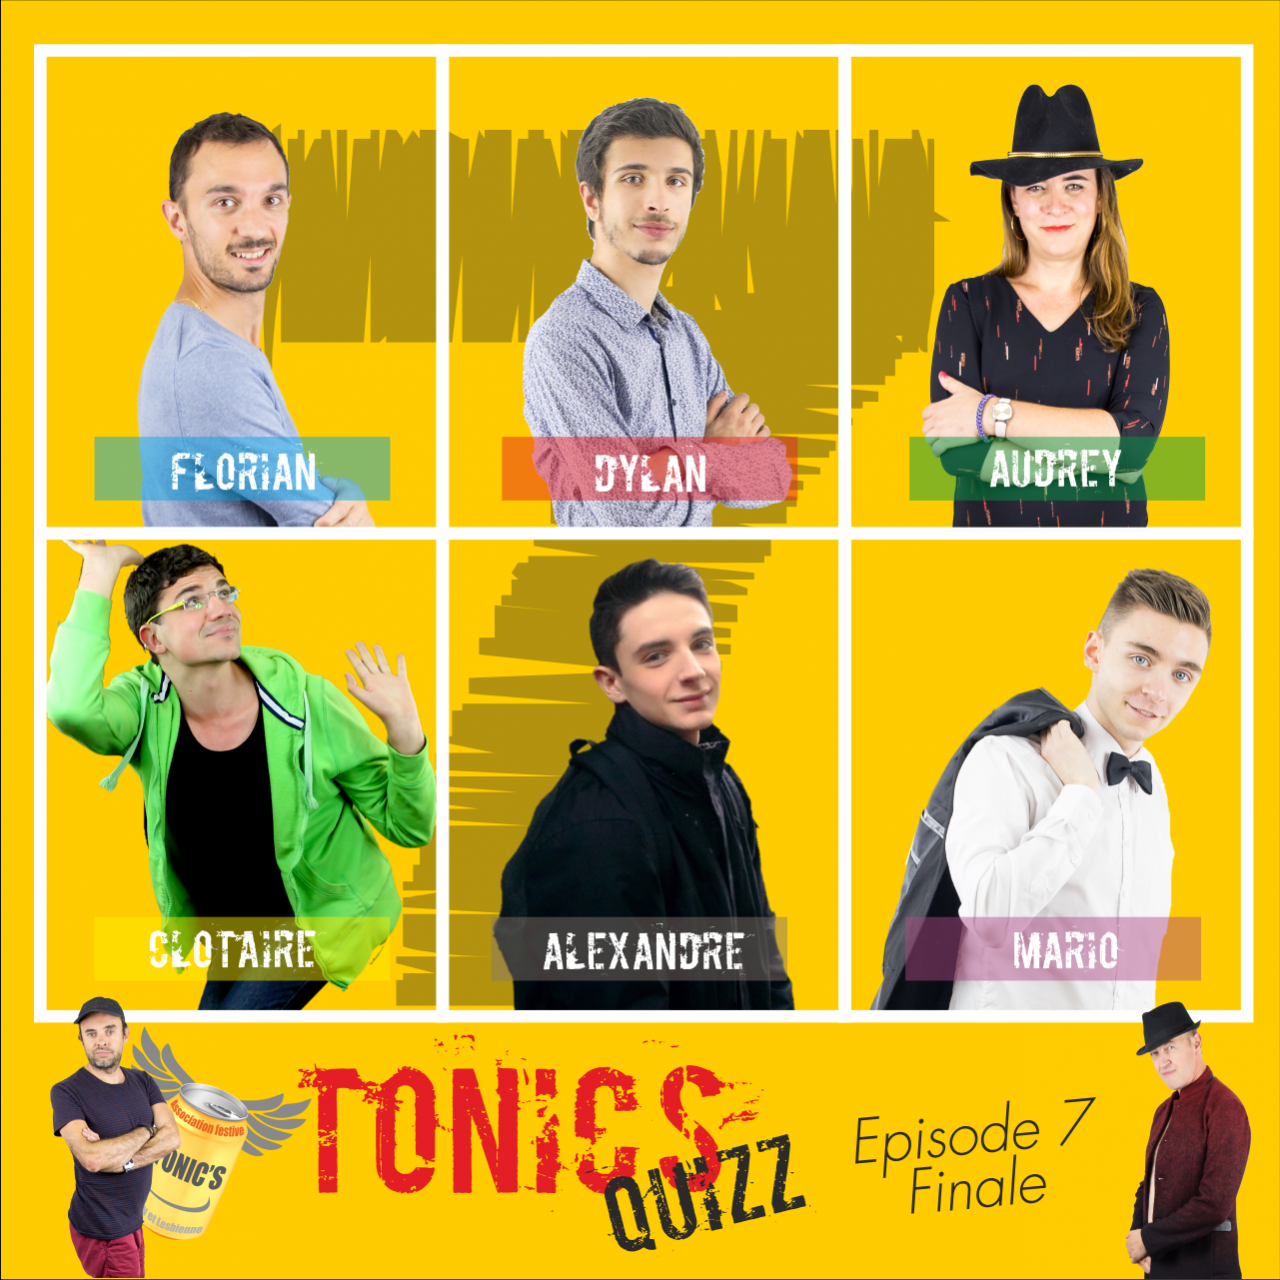 Tonic's Quizz Manche 7 (finale) Quizz Tonic's Tonic's Quizz Manche 7 (finale)